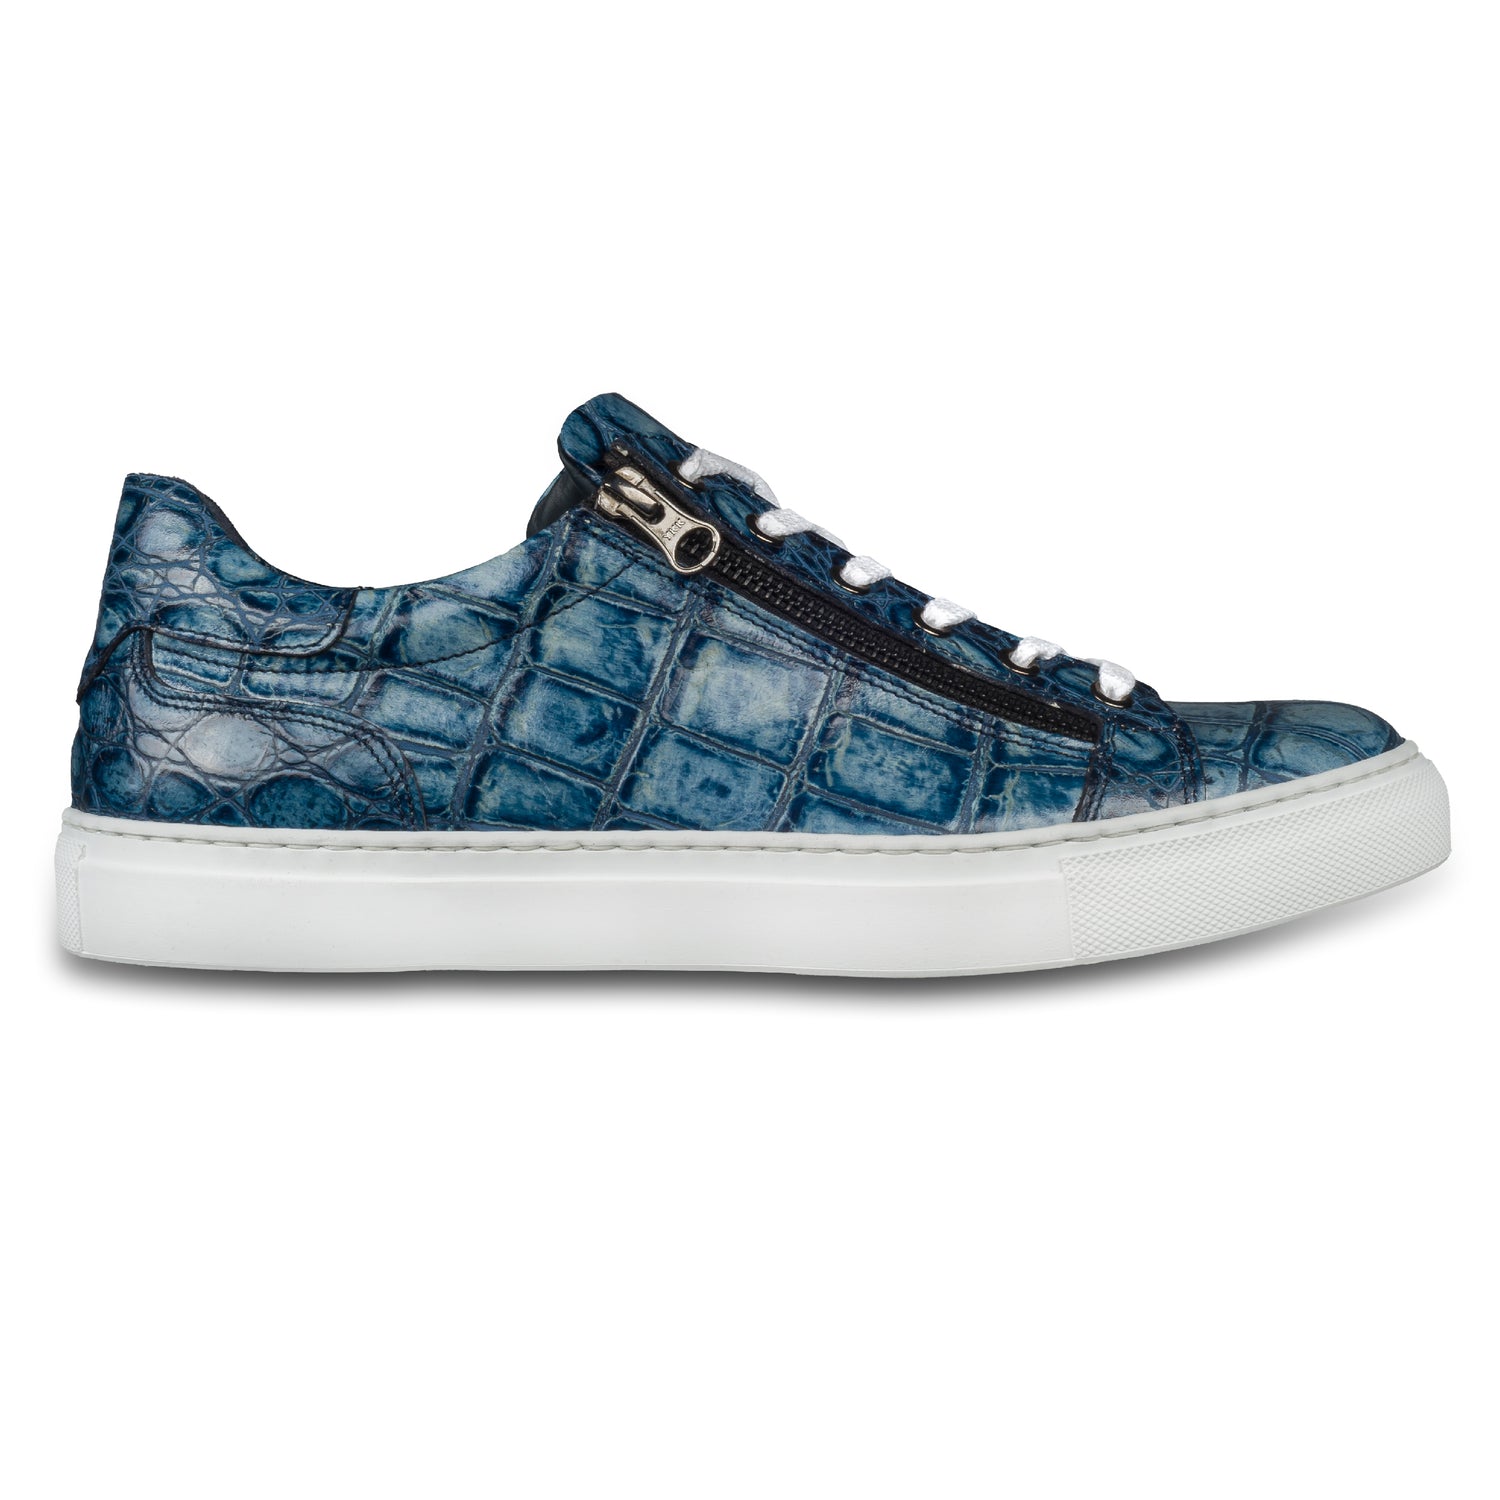 Lorenzi Italienische Herren Kalbsleder Sneaker in blau mit Kroko-Optik und weißer Sohle. Handgefertigt. Seitliche Ansicht der Außenseite rechter Schuh.